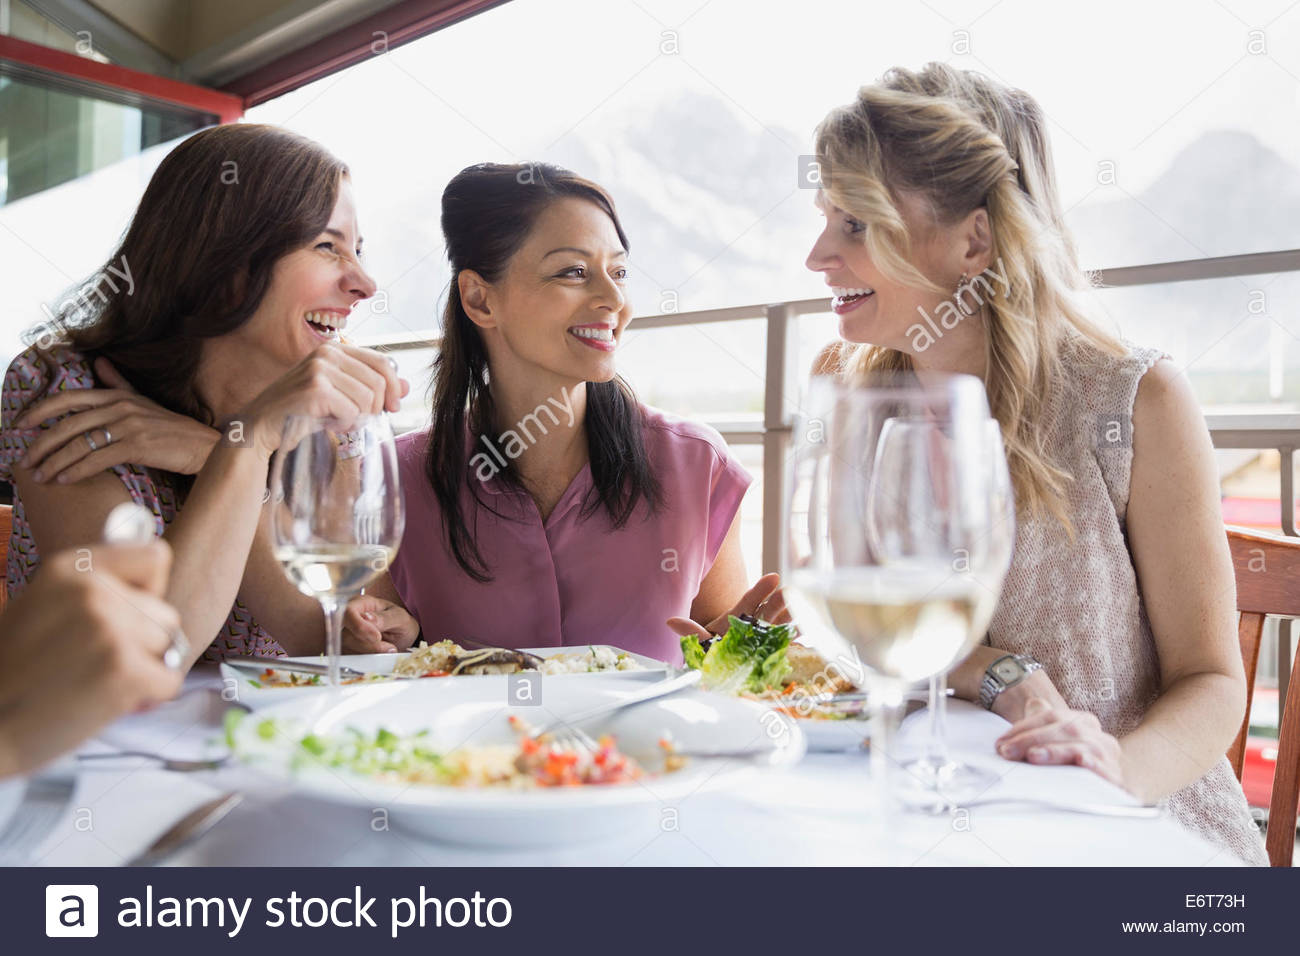 Le donne mangiare insieme nel ristorante Foto Stock